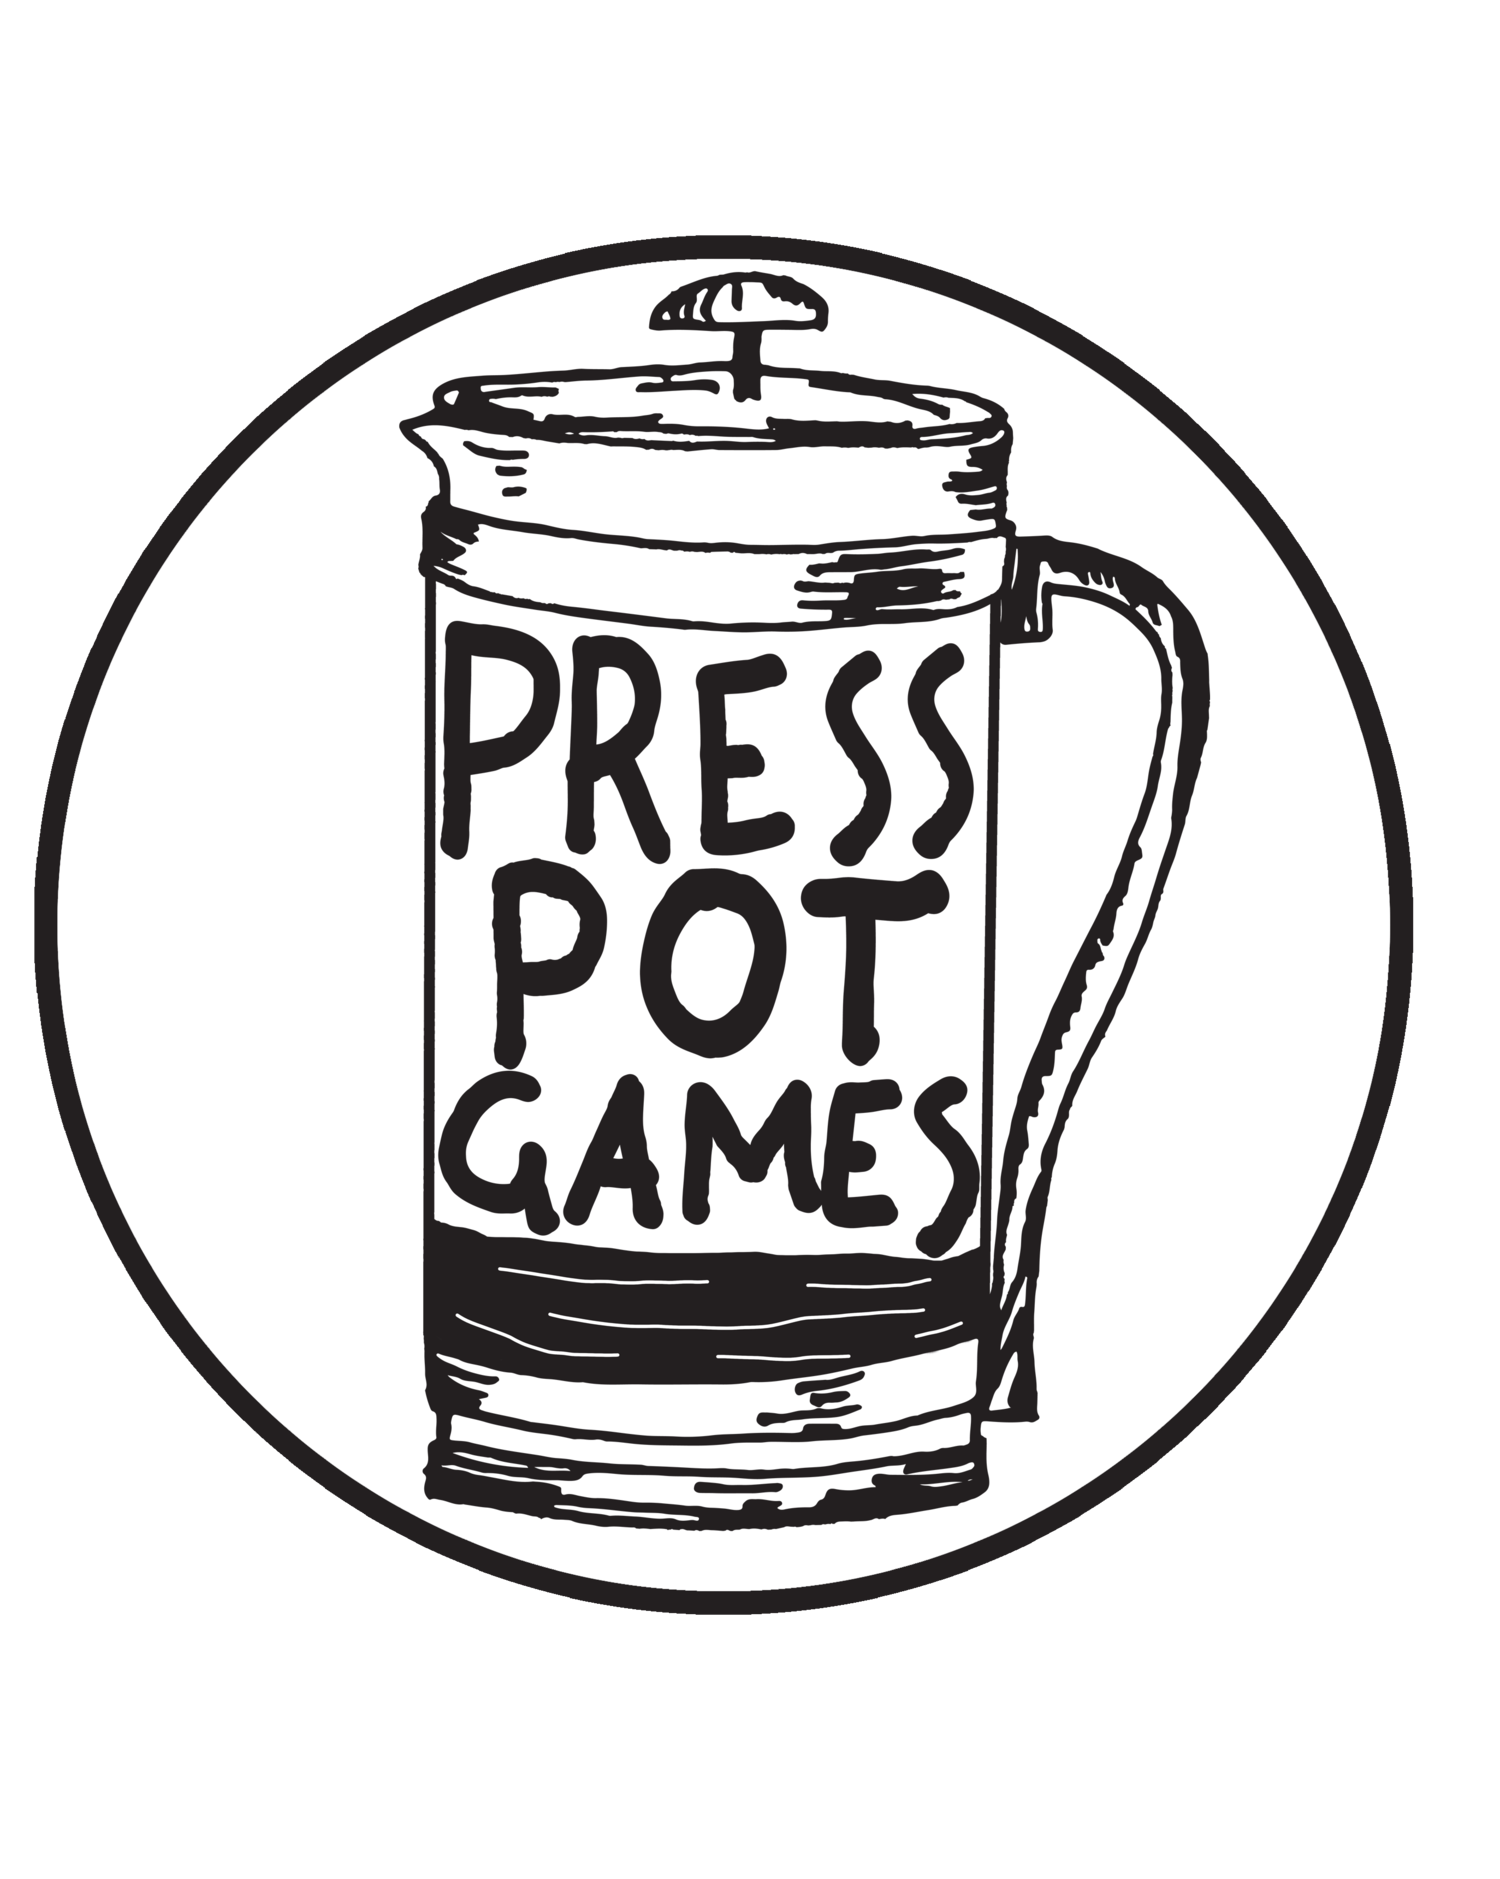 Press Pot Games